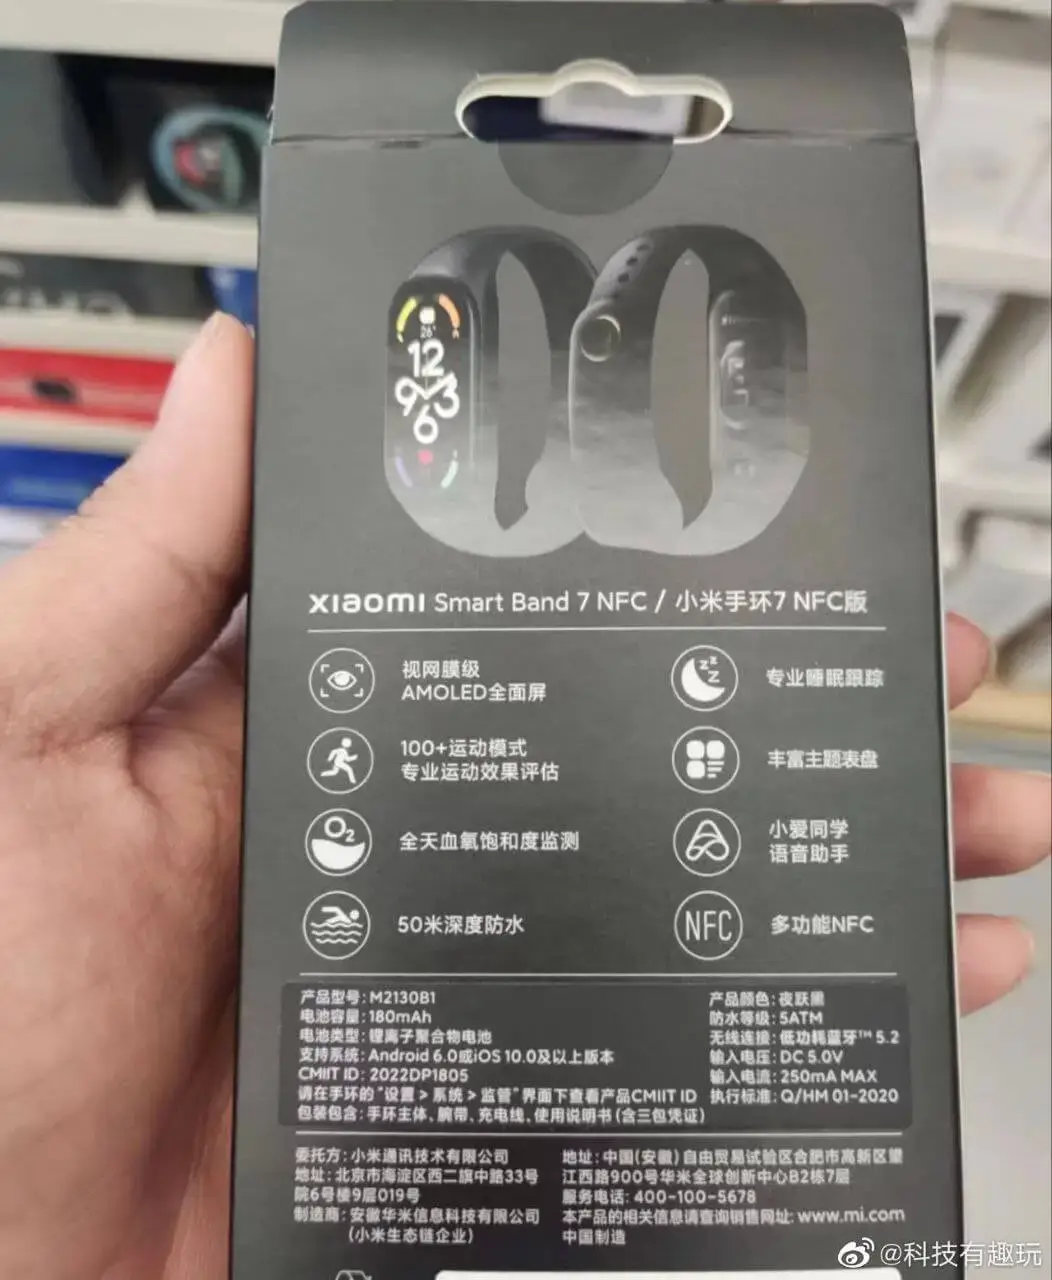 Xiaomi Band 7 Box